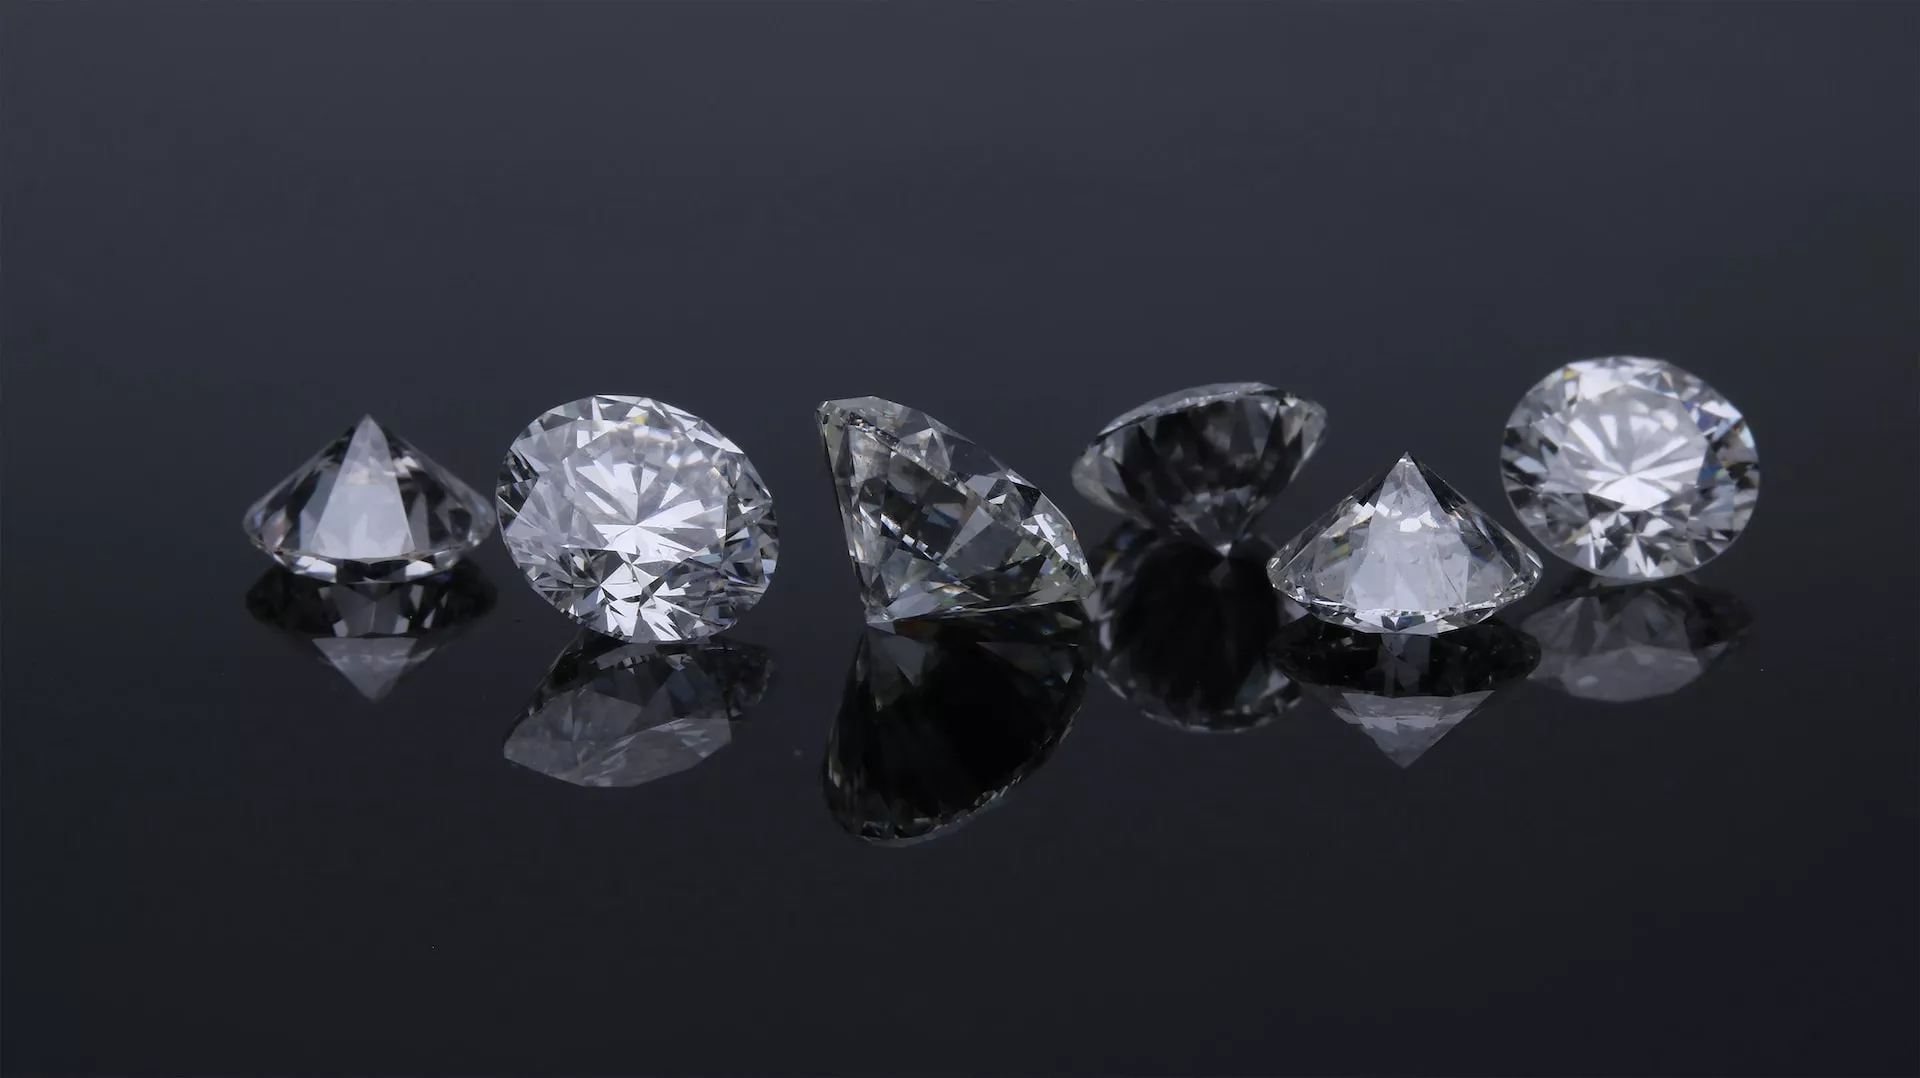 鑽石4C表是現今全球評價鑽石價值的基準之一。